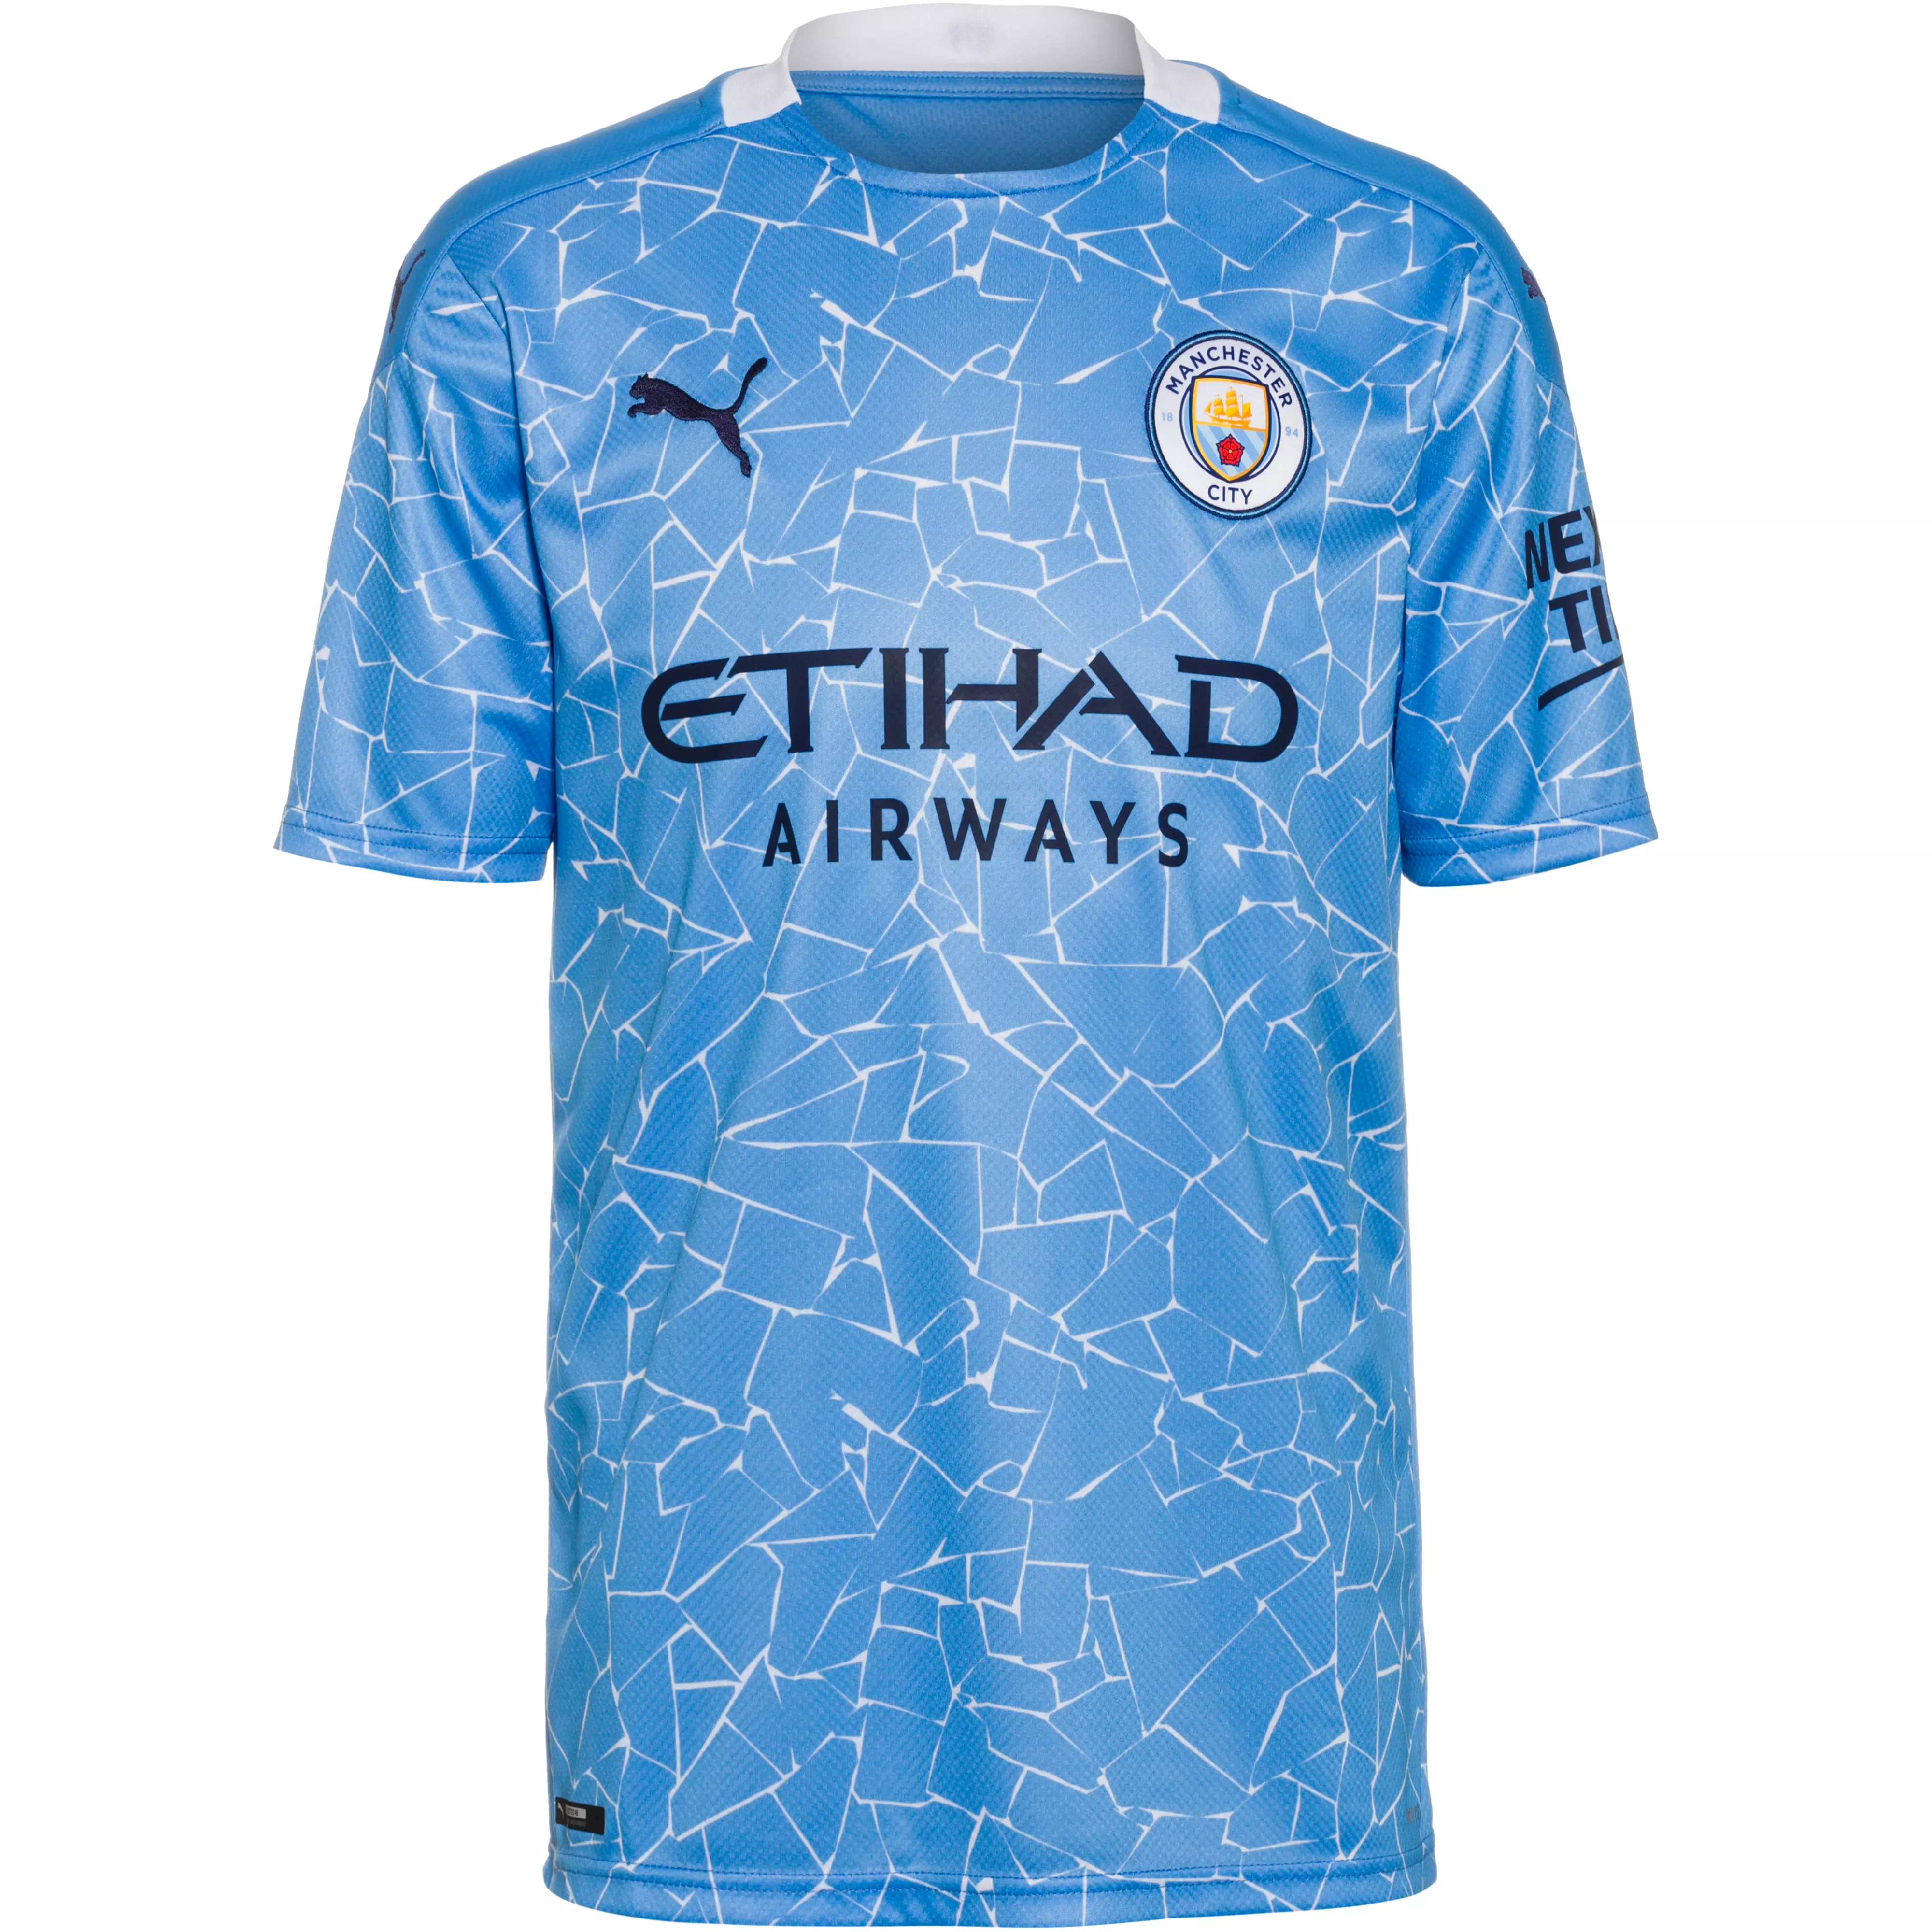 Puma Manchester City 20 21 Heim Trikot Herren Team Light Blue Peacoat Im Online Shop Von Sportscheck Kaufen